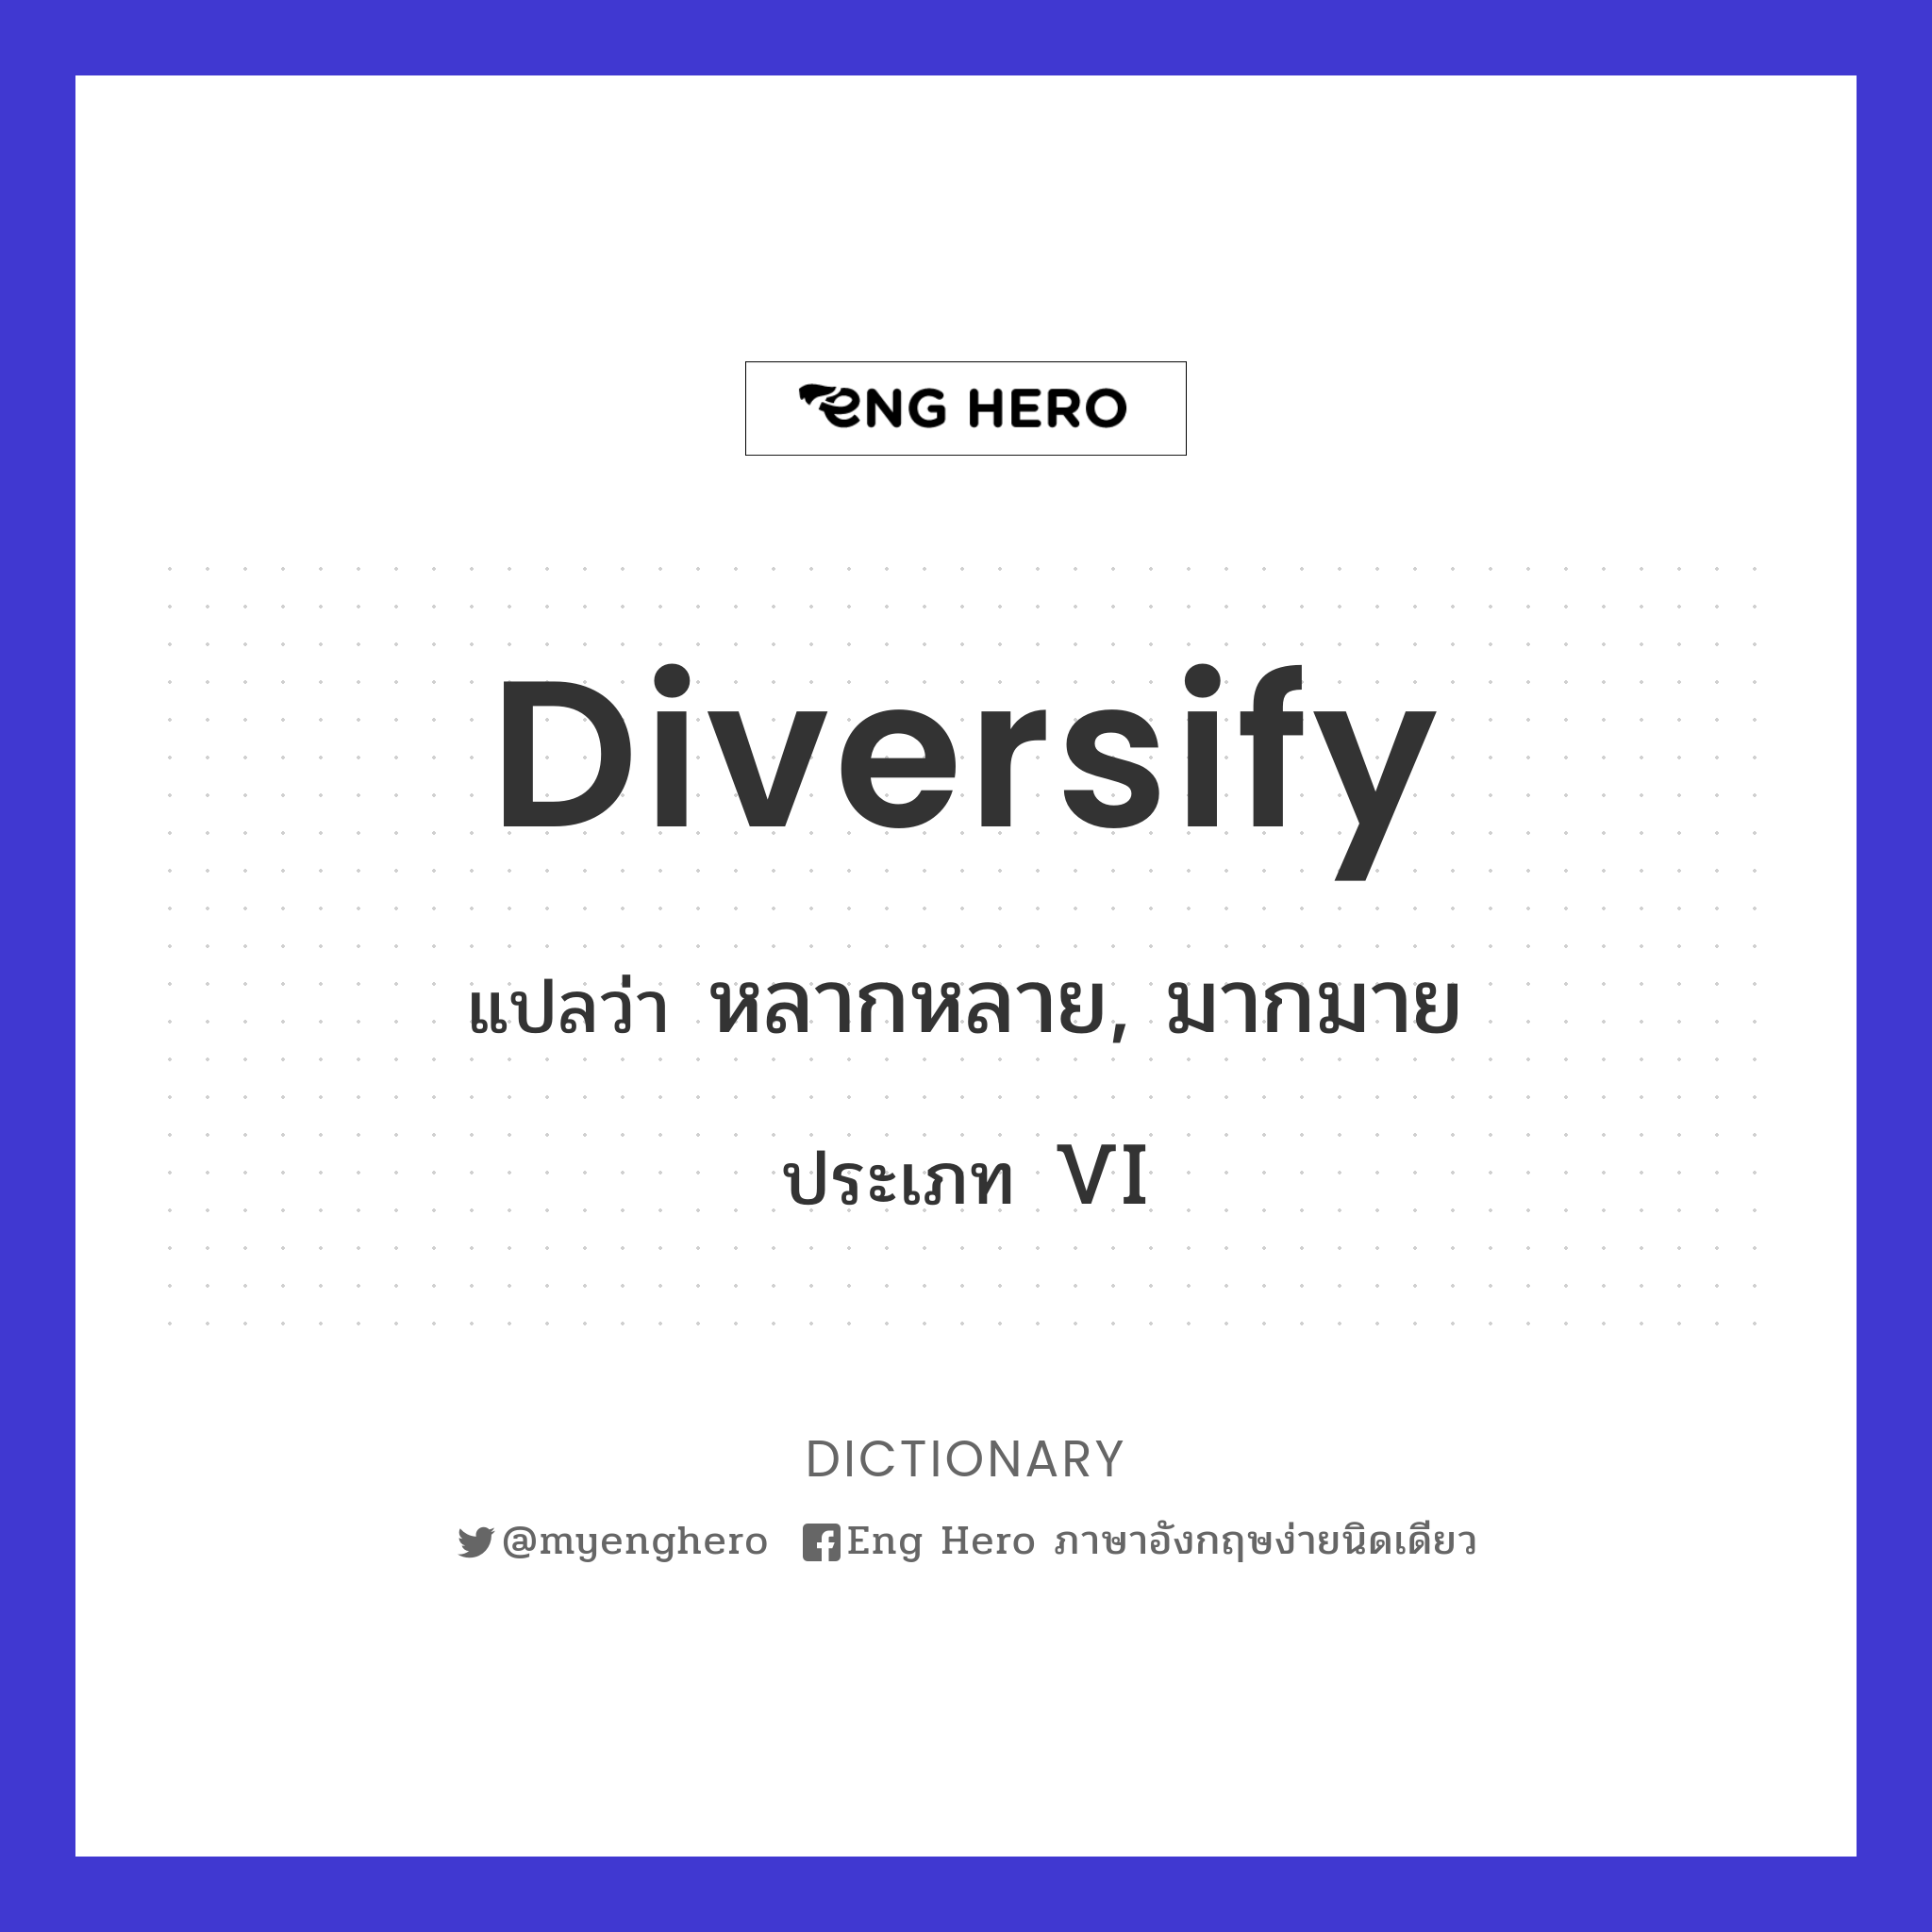 diversify